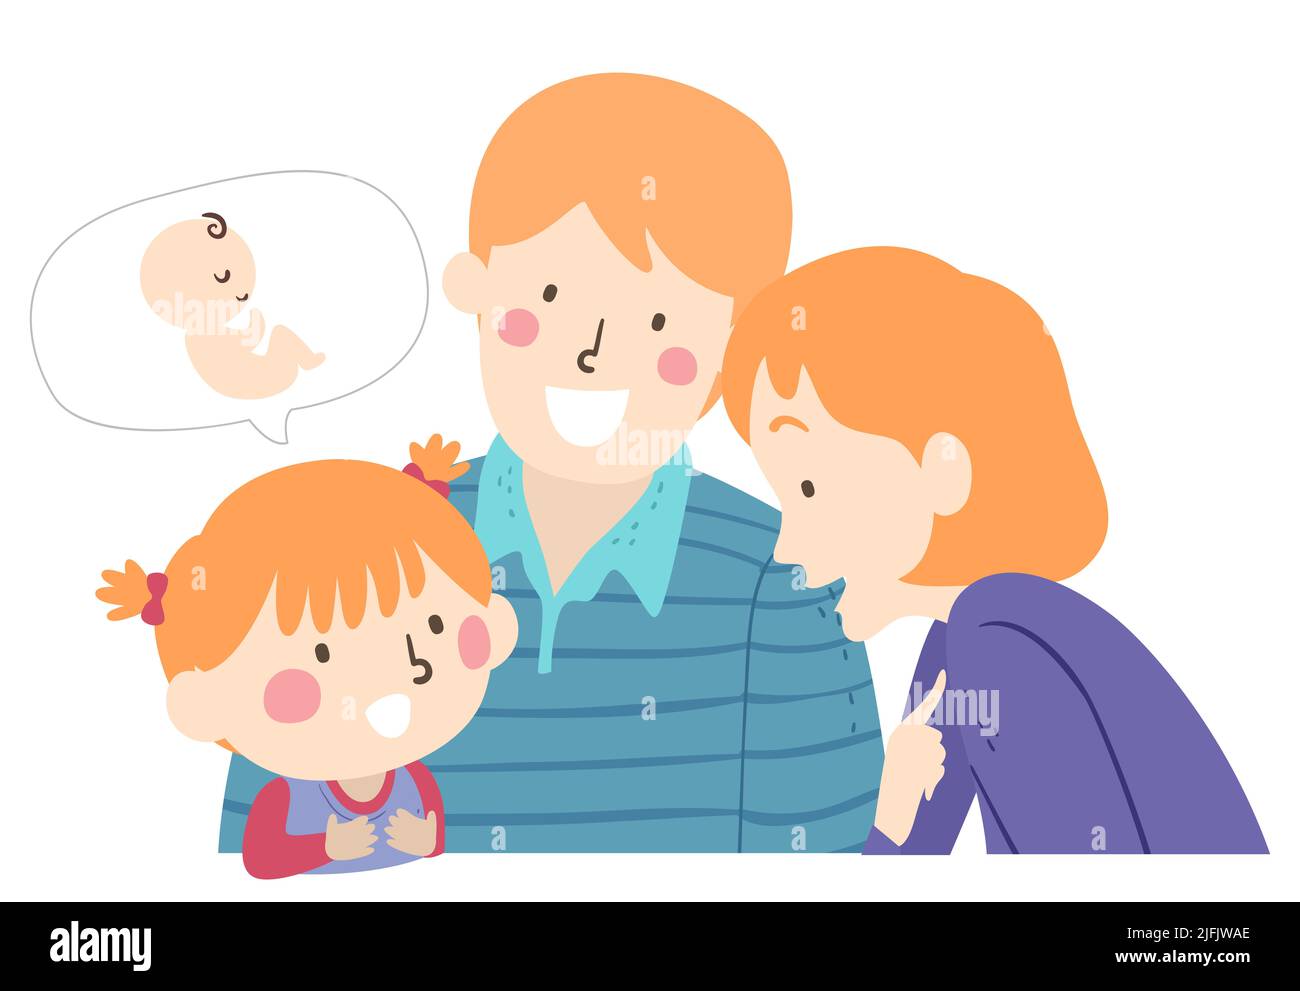 Ilustración de Kid Girl haciendo preguntas a los padres sobre una burbuja de bebé en el habla Foto de stock